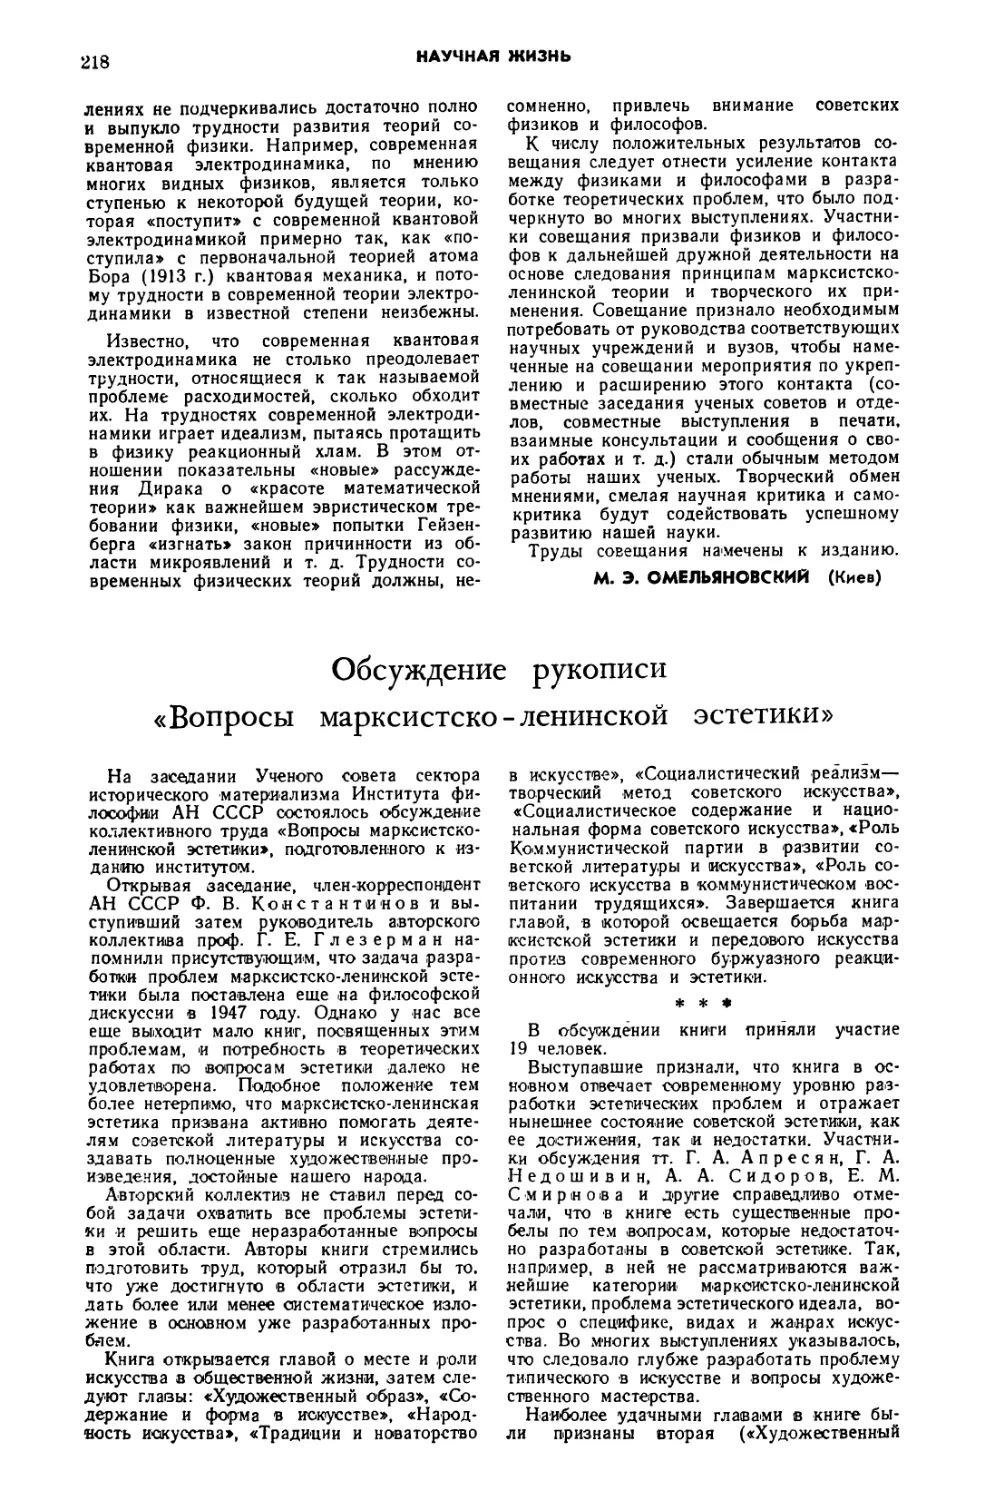 Б. 3.— Обсуждение рукописи «Вопросы марксистско-ленинской эстетики»